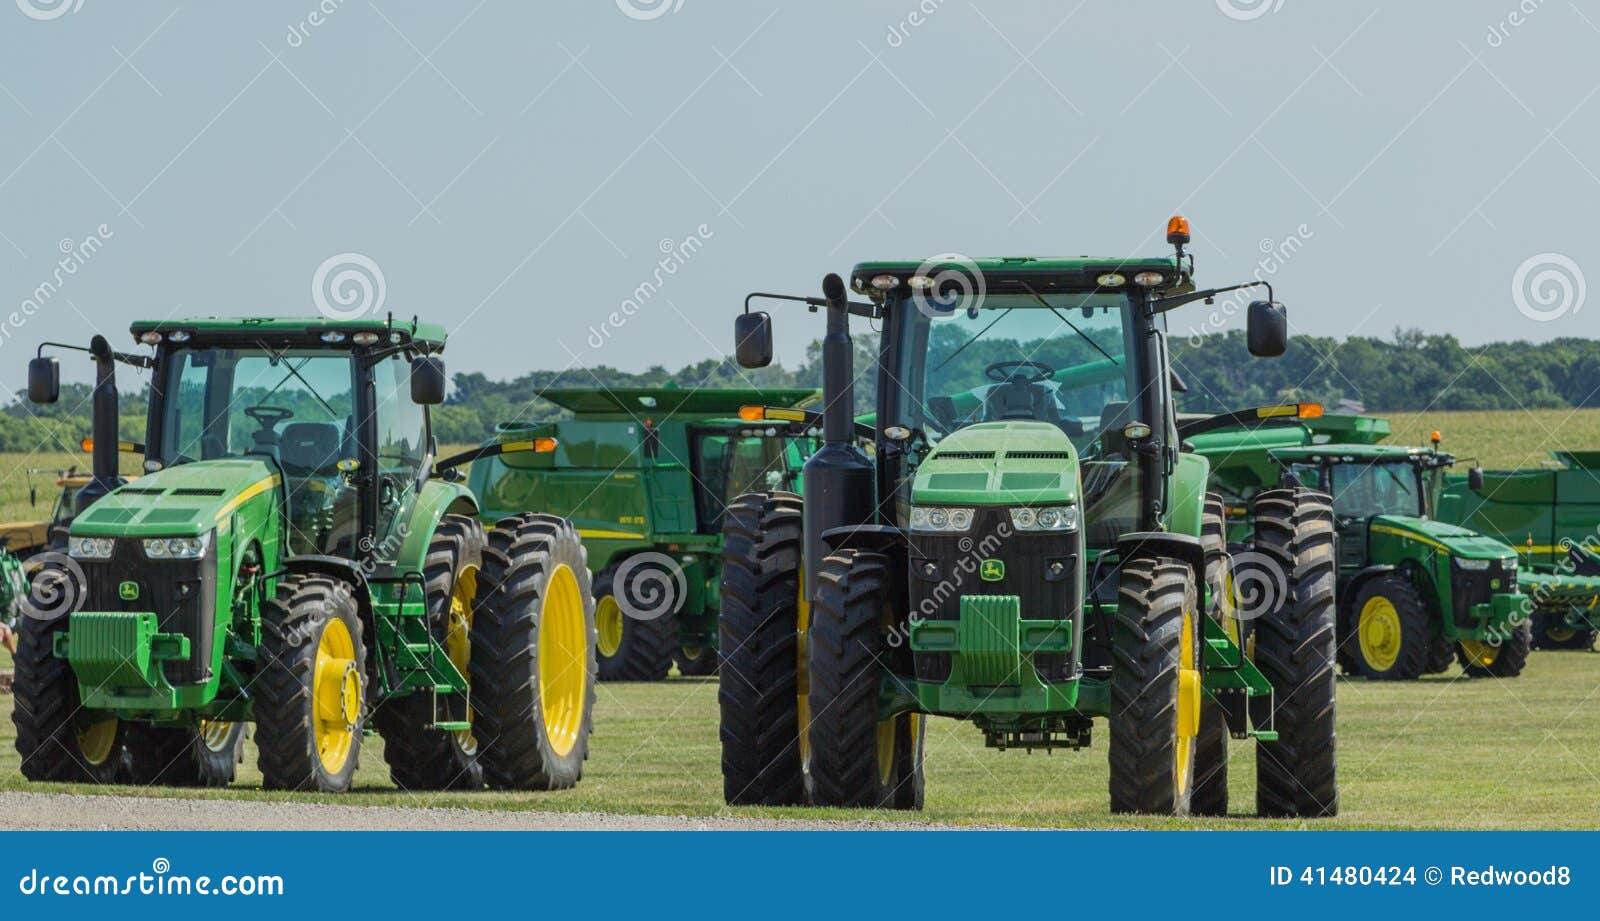 John Deere Farm Tractors. Tratores e equipamento de exploração agrícola de John Deere